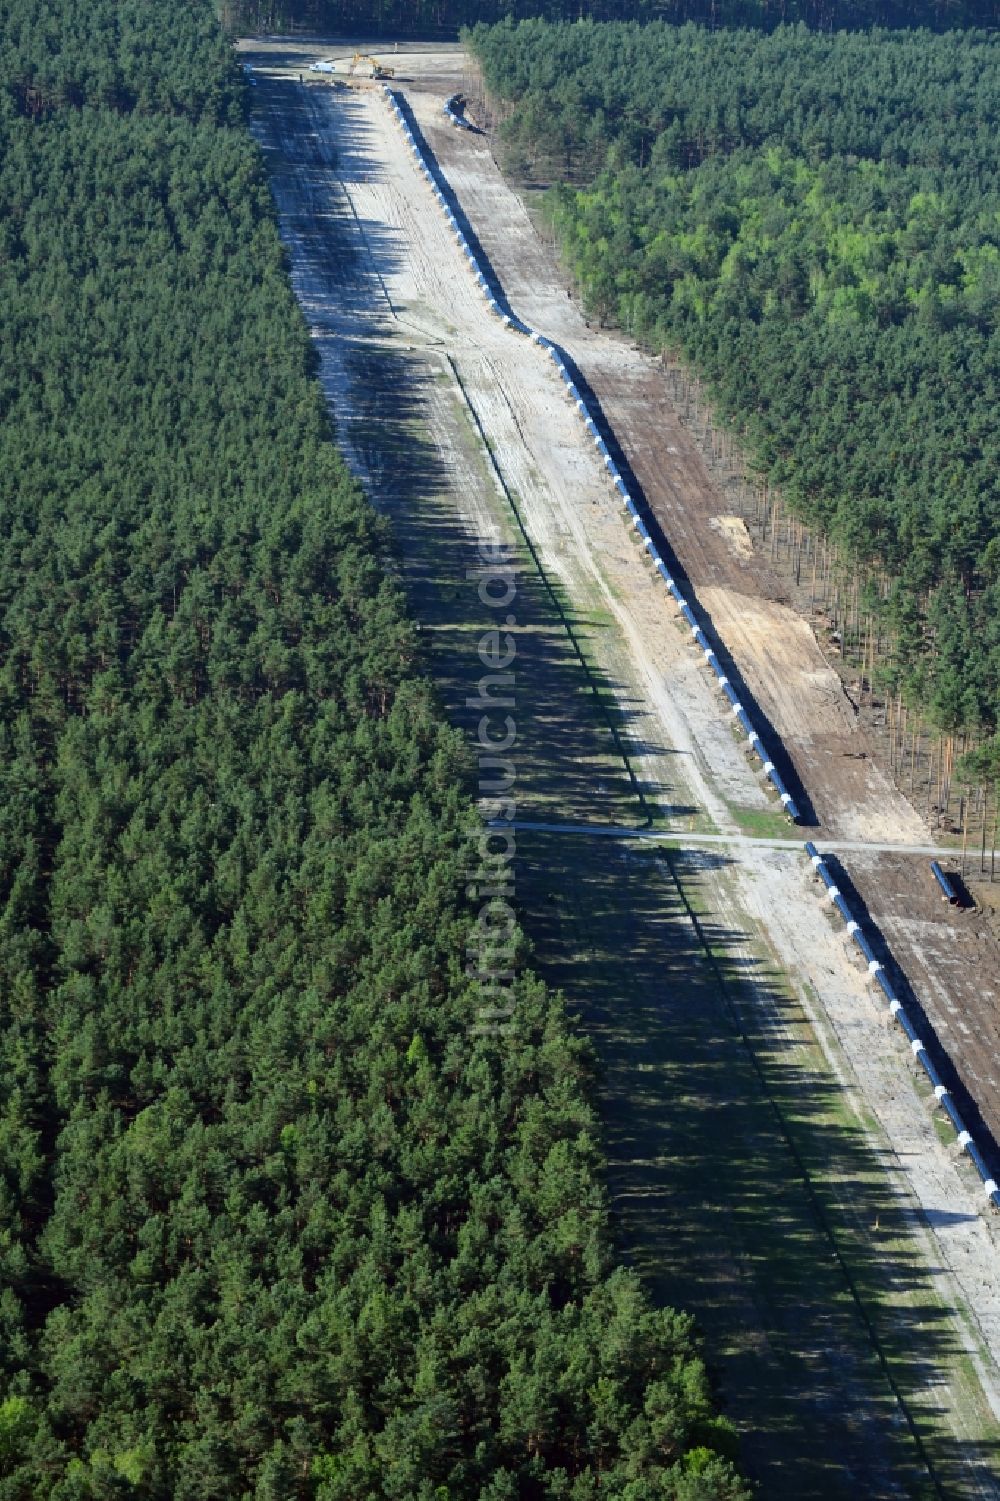 Luftbild Groß Köris - Baustelle zur Verlegung von Leitungs- Rohren der EUGAL Trasse in einem Wald bei Groß Köris im Bundesland Brandenburg, Deutschland